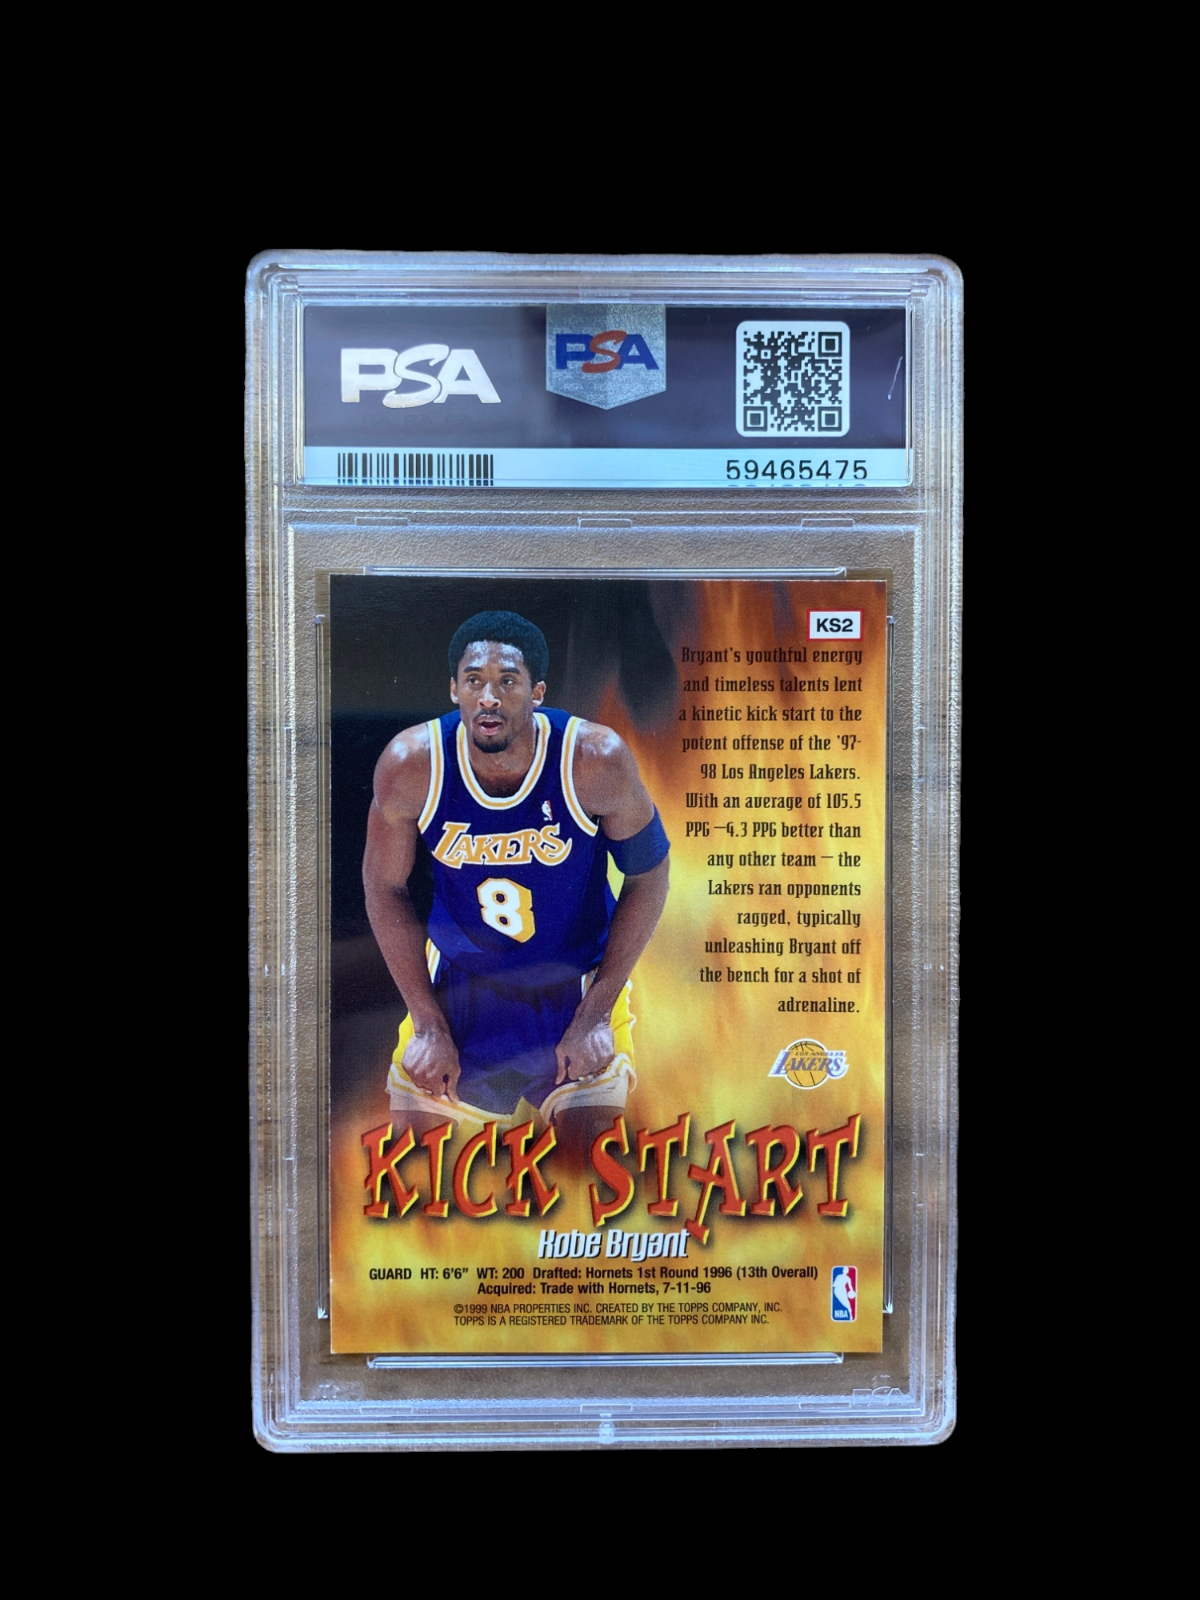 100% Authentic Kobe Bryant 1998 Topps Kick Start #KS2 PSA 9 Mint